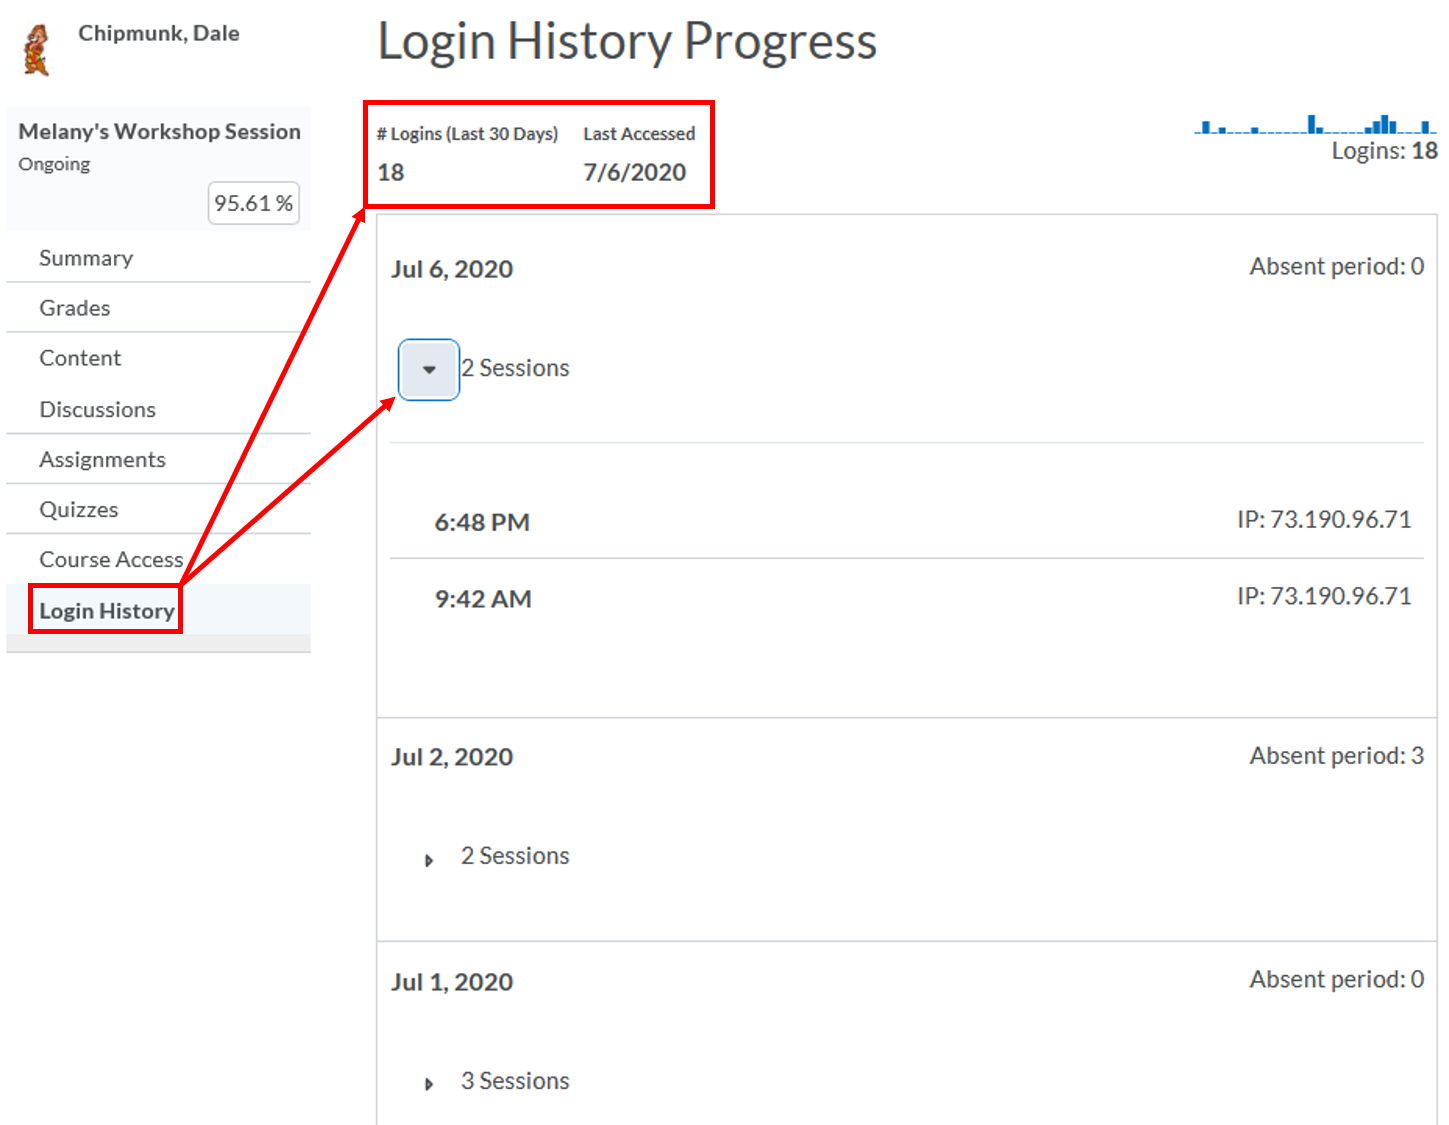 class-progress: Login History Progress